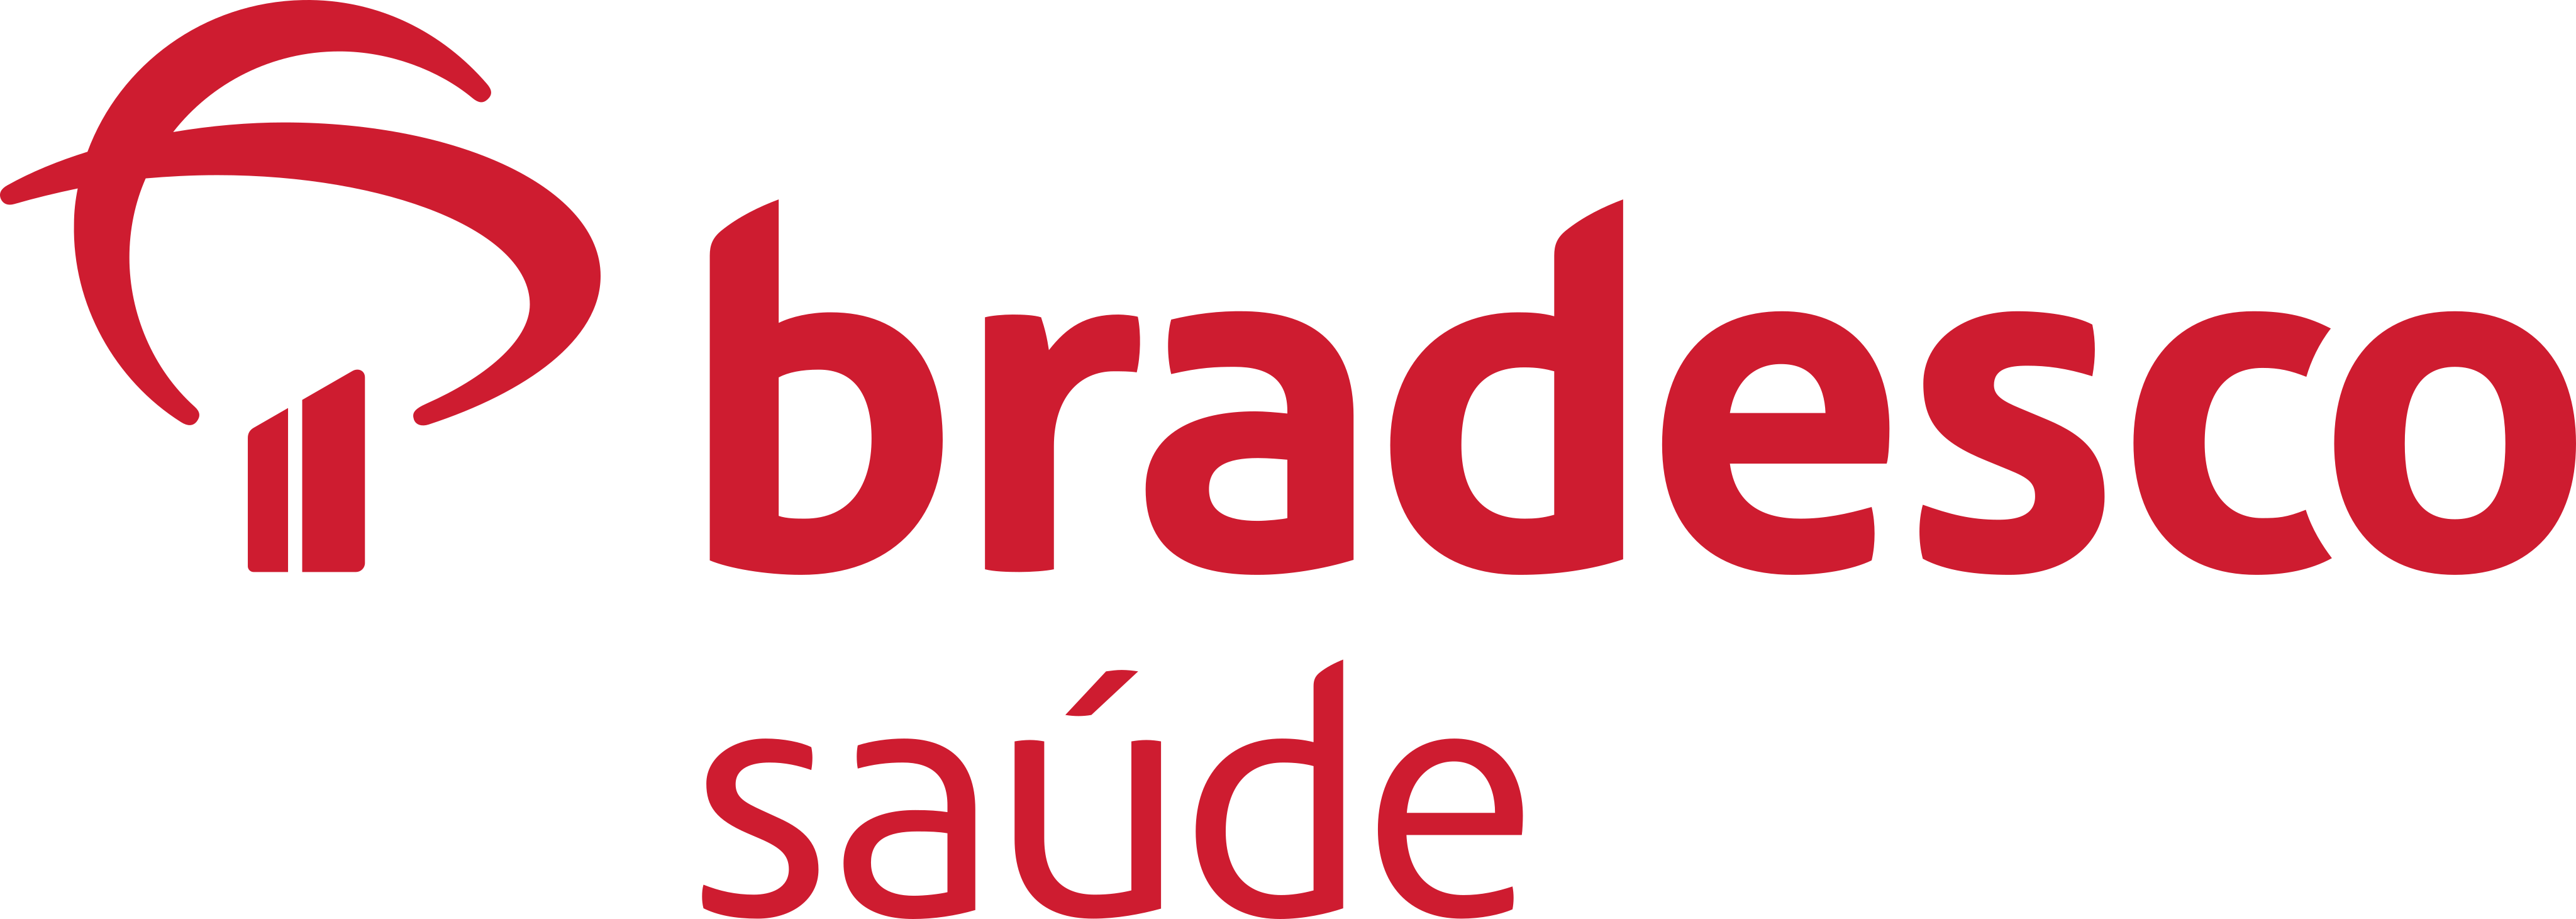 cropped-bradesco-saude-logo-1-1-1